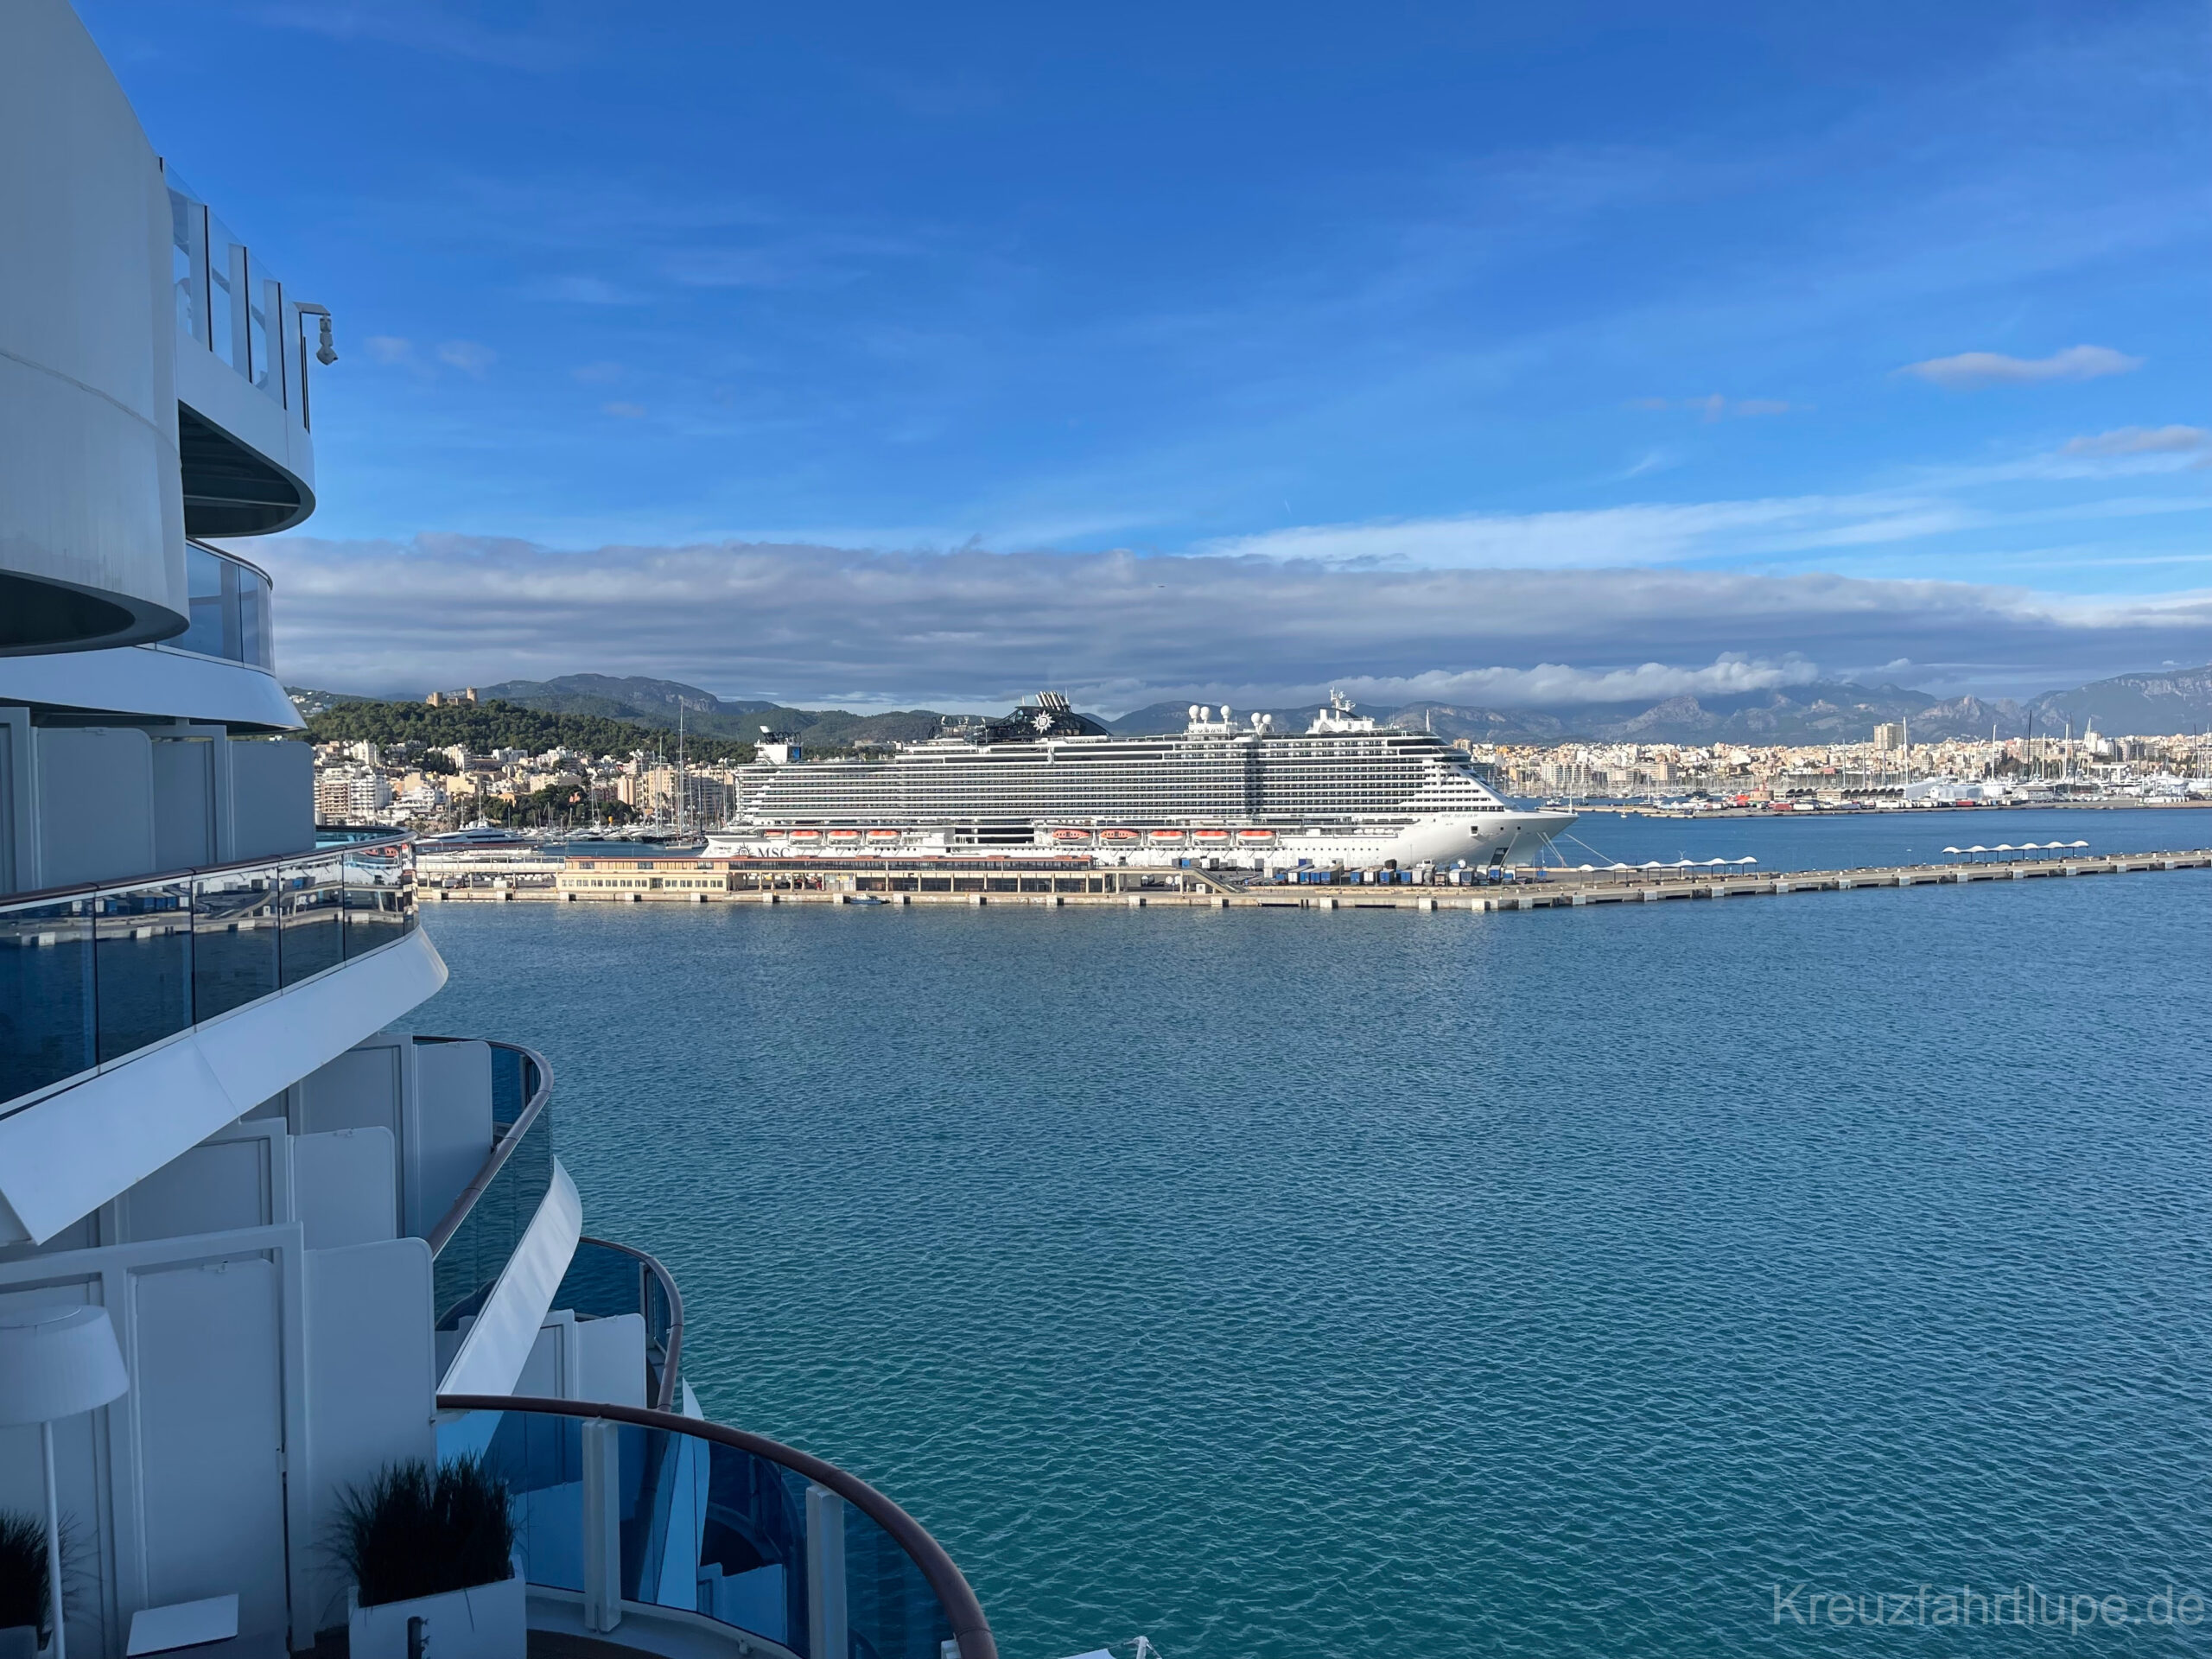 AIDA Kreuzfahrt Ausblick auf ein MSC Kreuzfahrtschiff